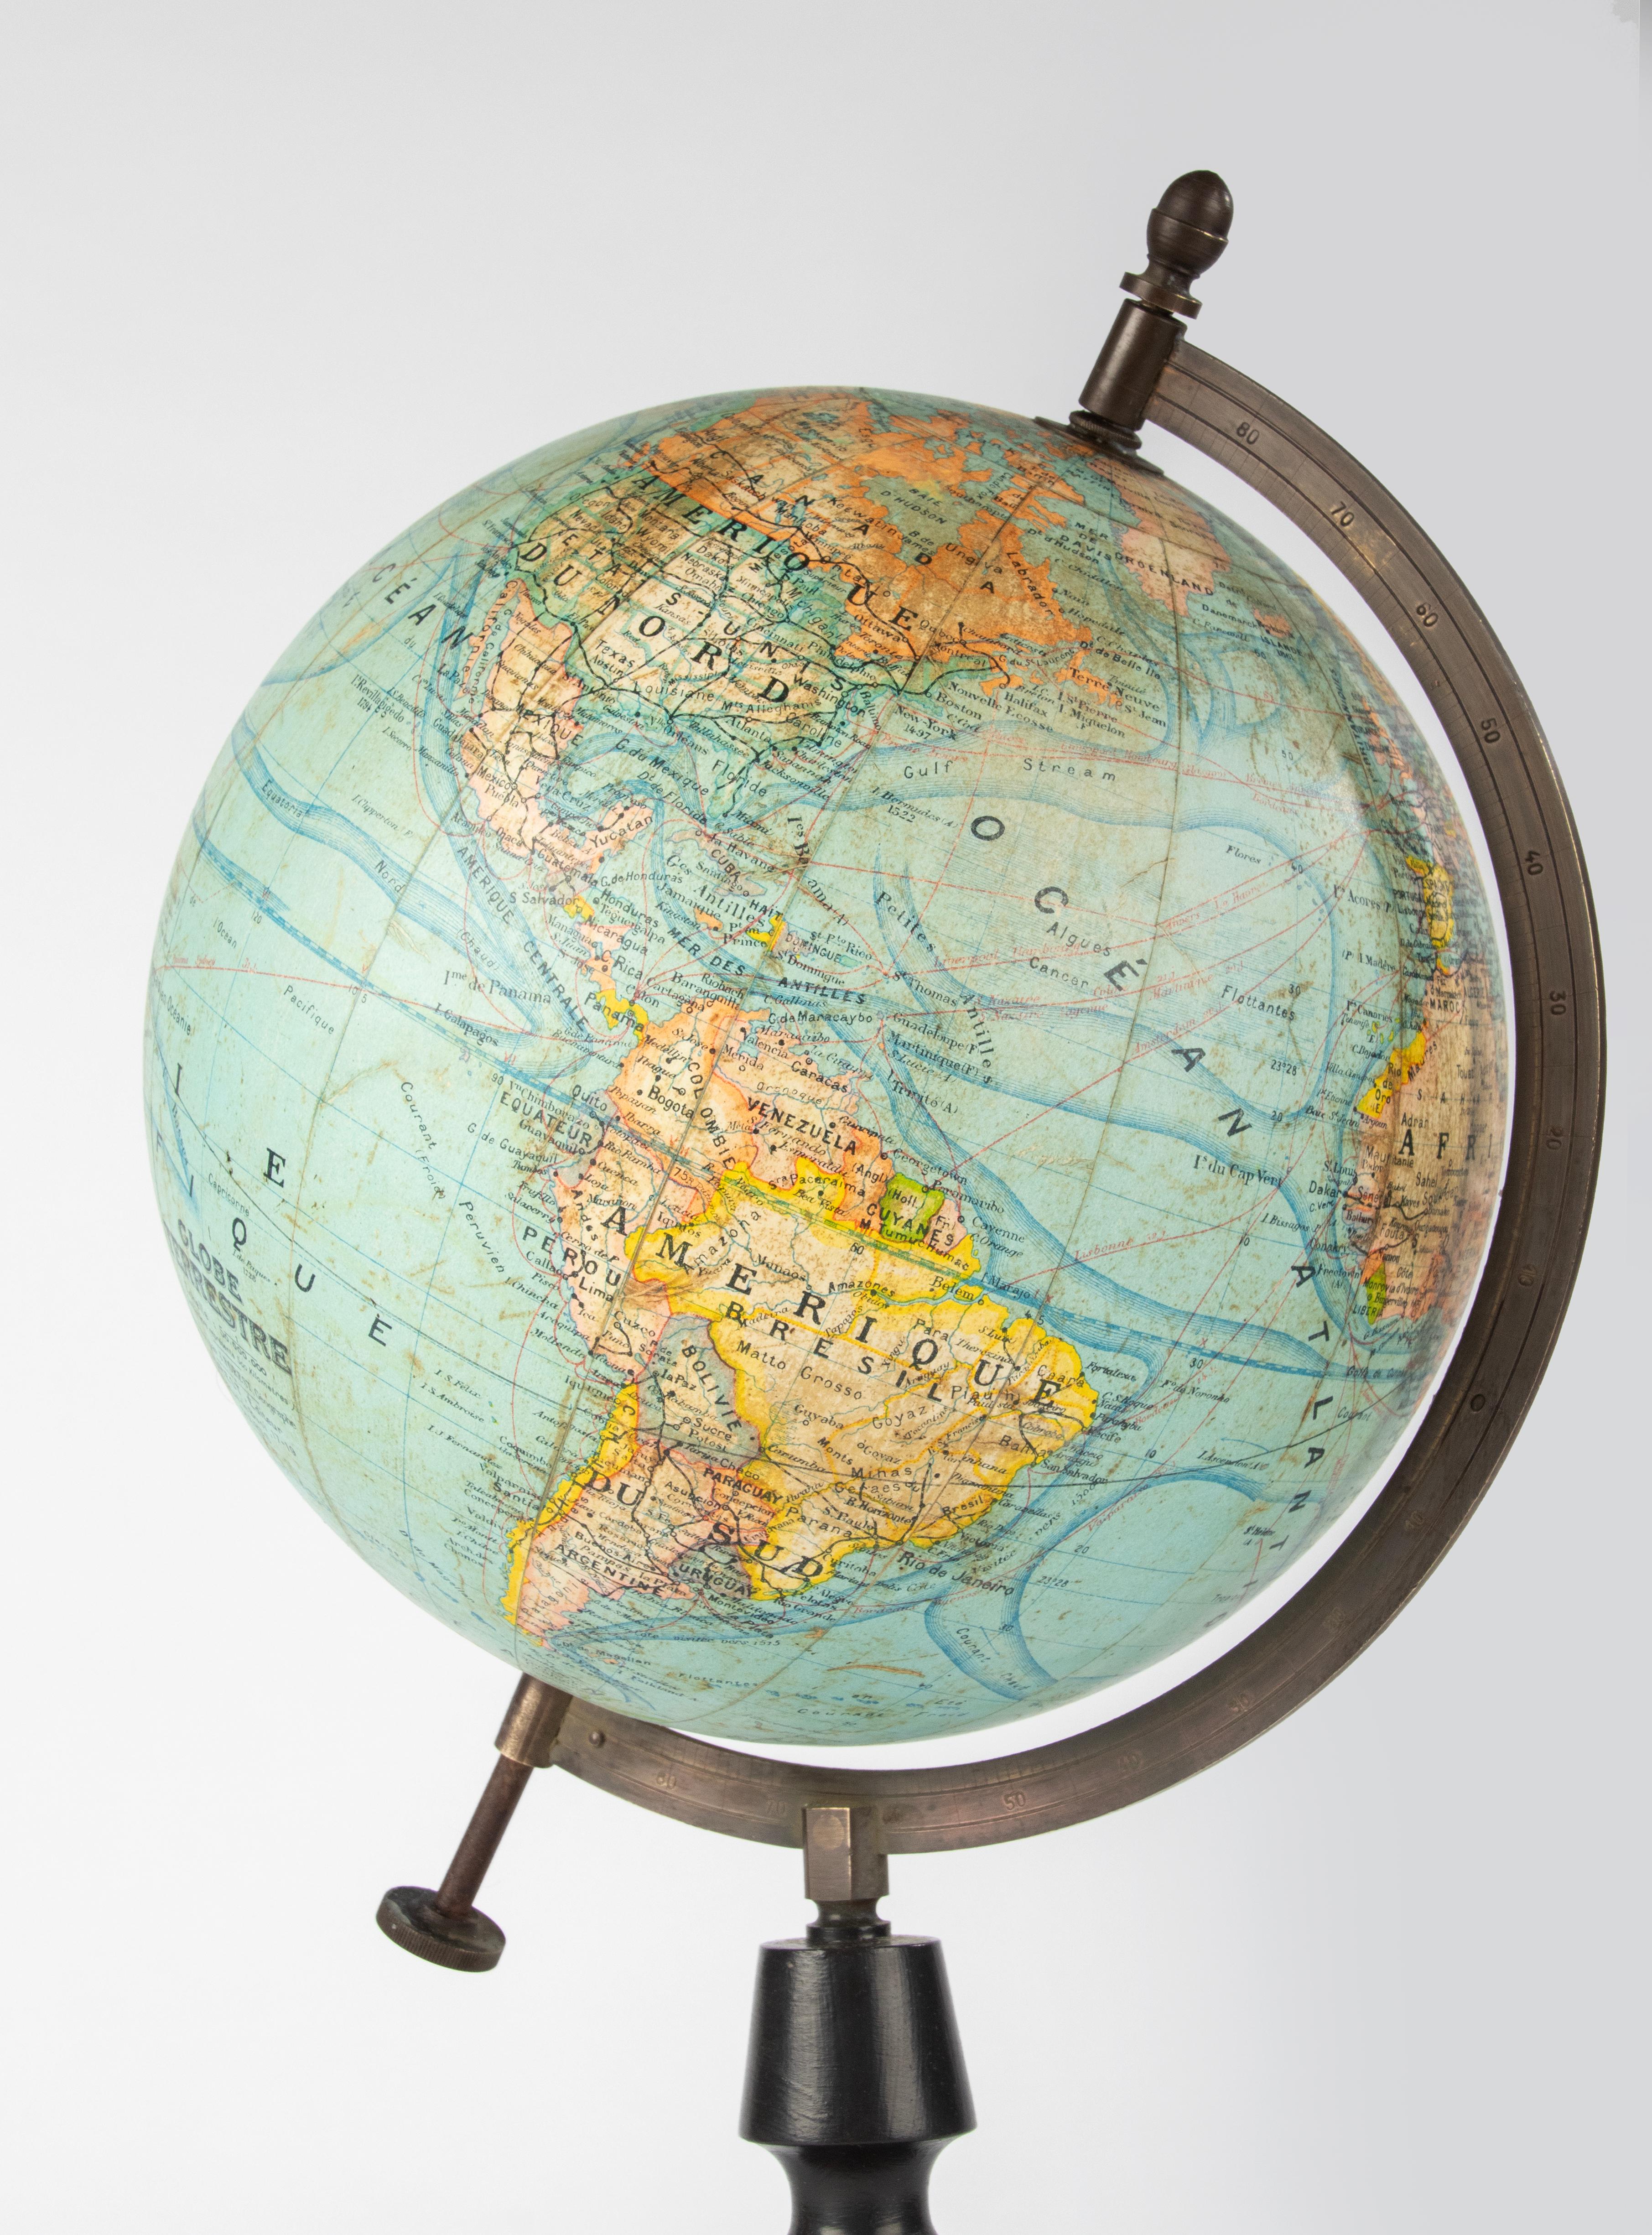 Un magnifique globe terrestre ancien, fait de carton et de papier, sur un support en bois noirci. 
Le globe a été édité par J. Forest de Paris. Le globe est doté d'un magnifique rapporteur en cuivre. 
Date estimée : vers 1900. 
Le globe est en bon